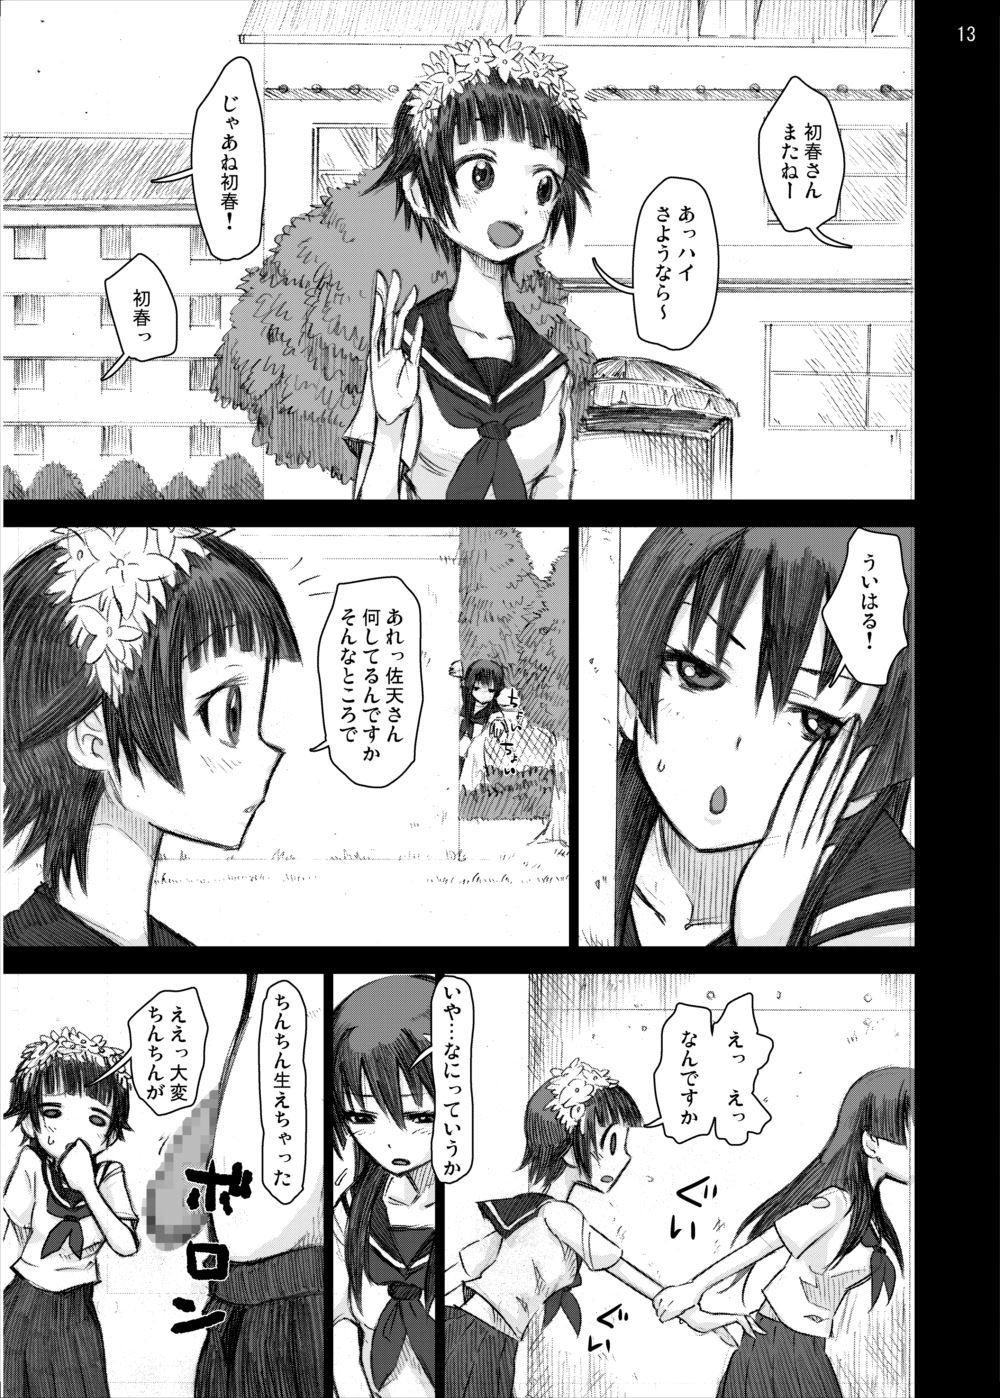 Office Fuck Ryoujoku Jigoku 4 - Futanari Stalker Rape... - Toaru kagaku no railgun Solo Female - Page 12